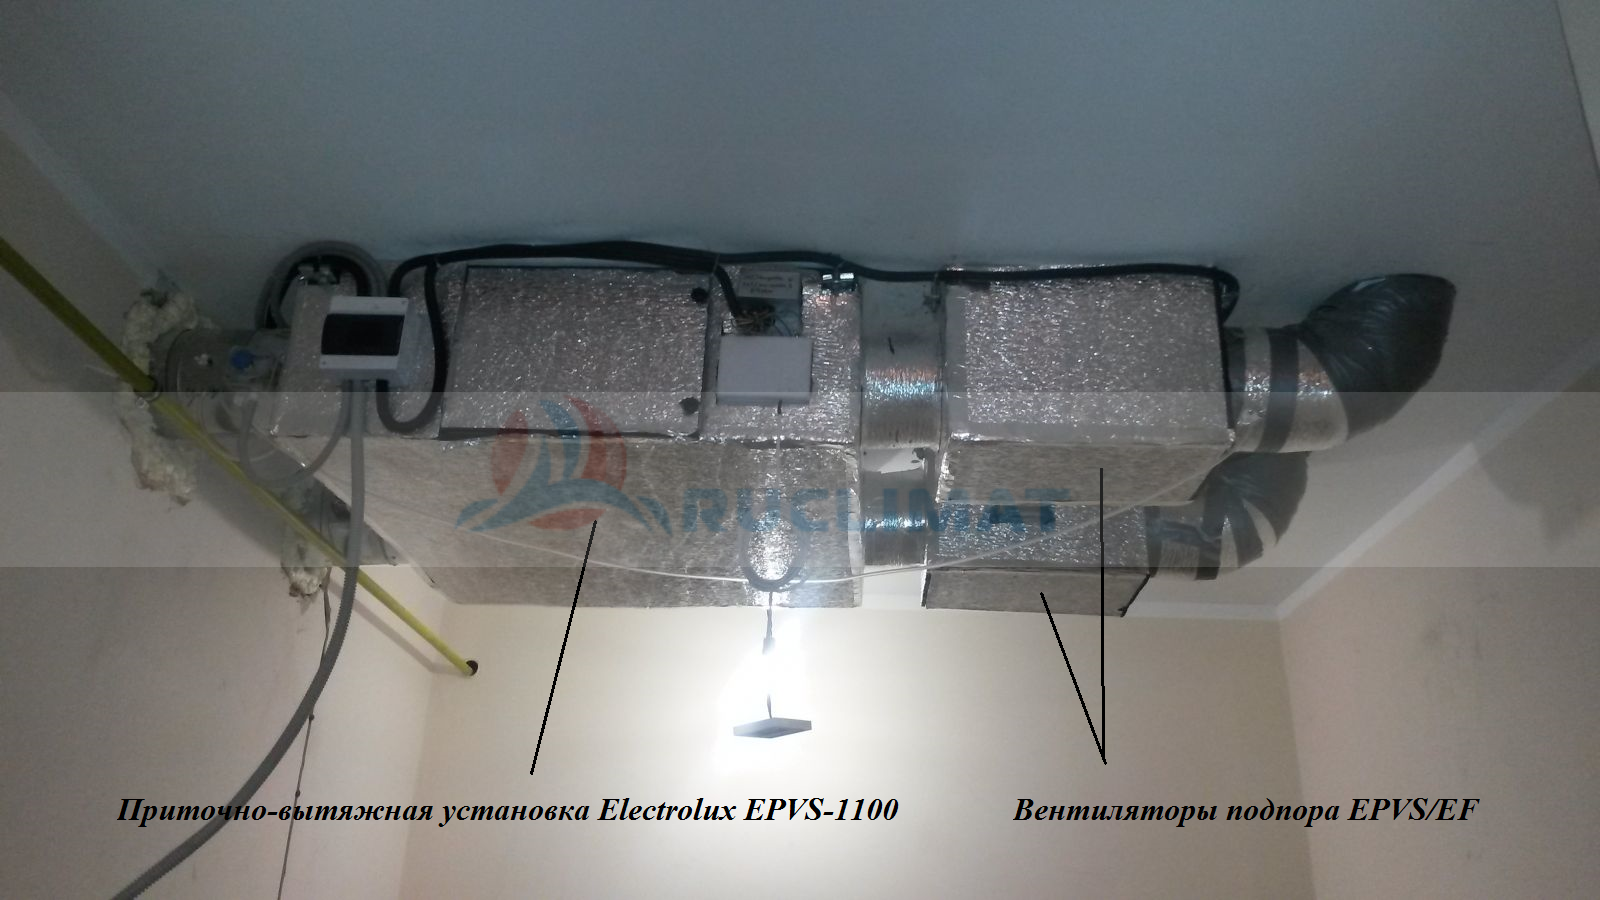 Монтаж приточно-вытяжной установки Electrolux EPVS 1300 с вентиляторами подпора и постнагревателем